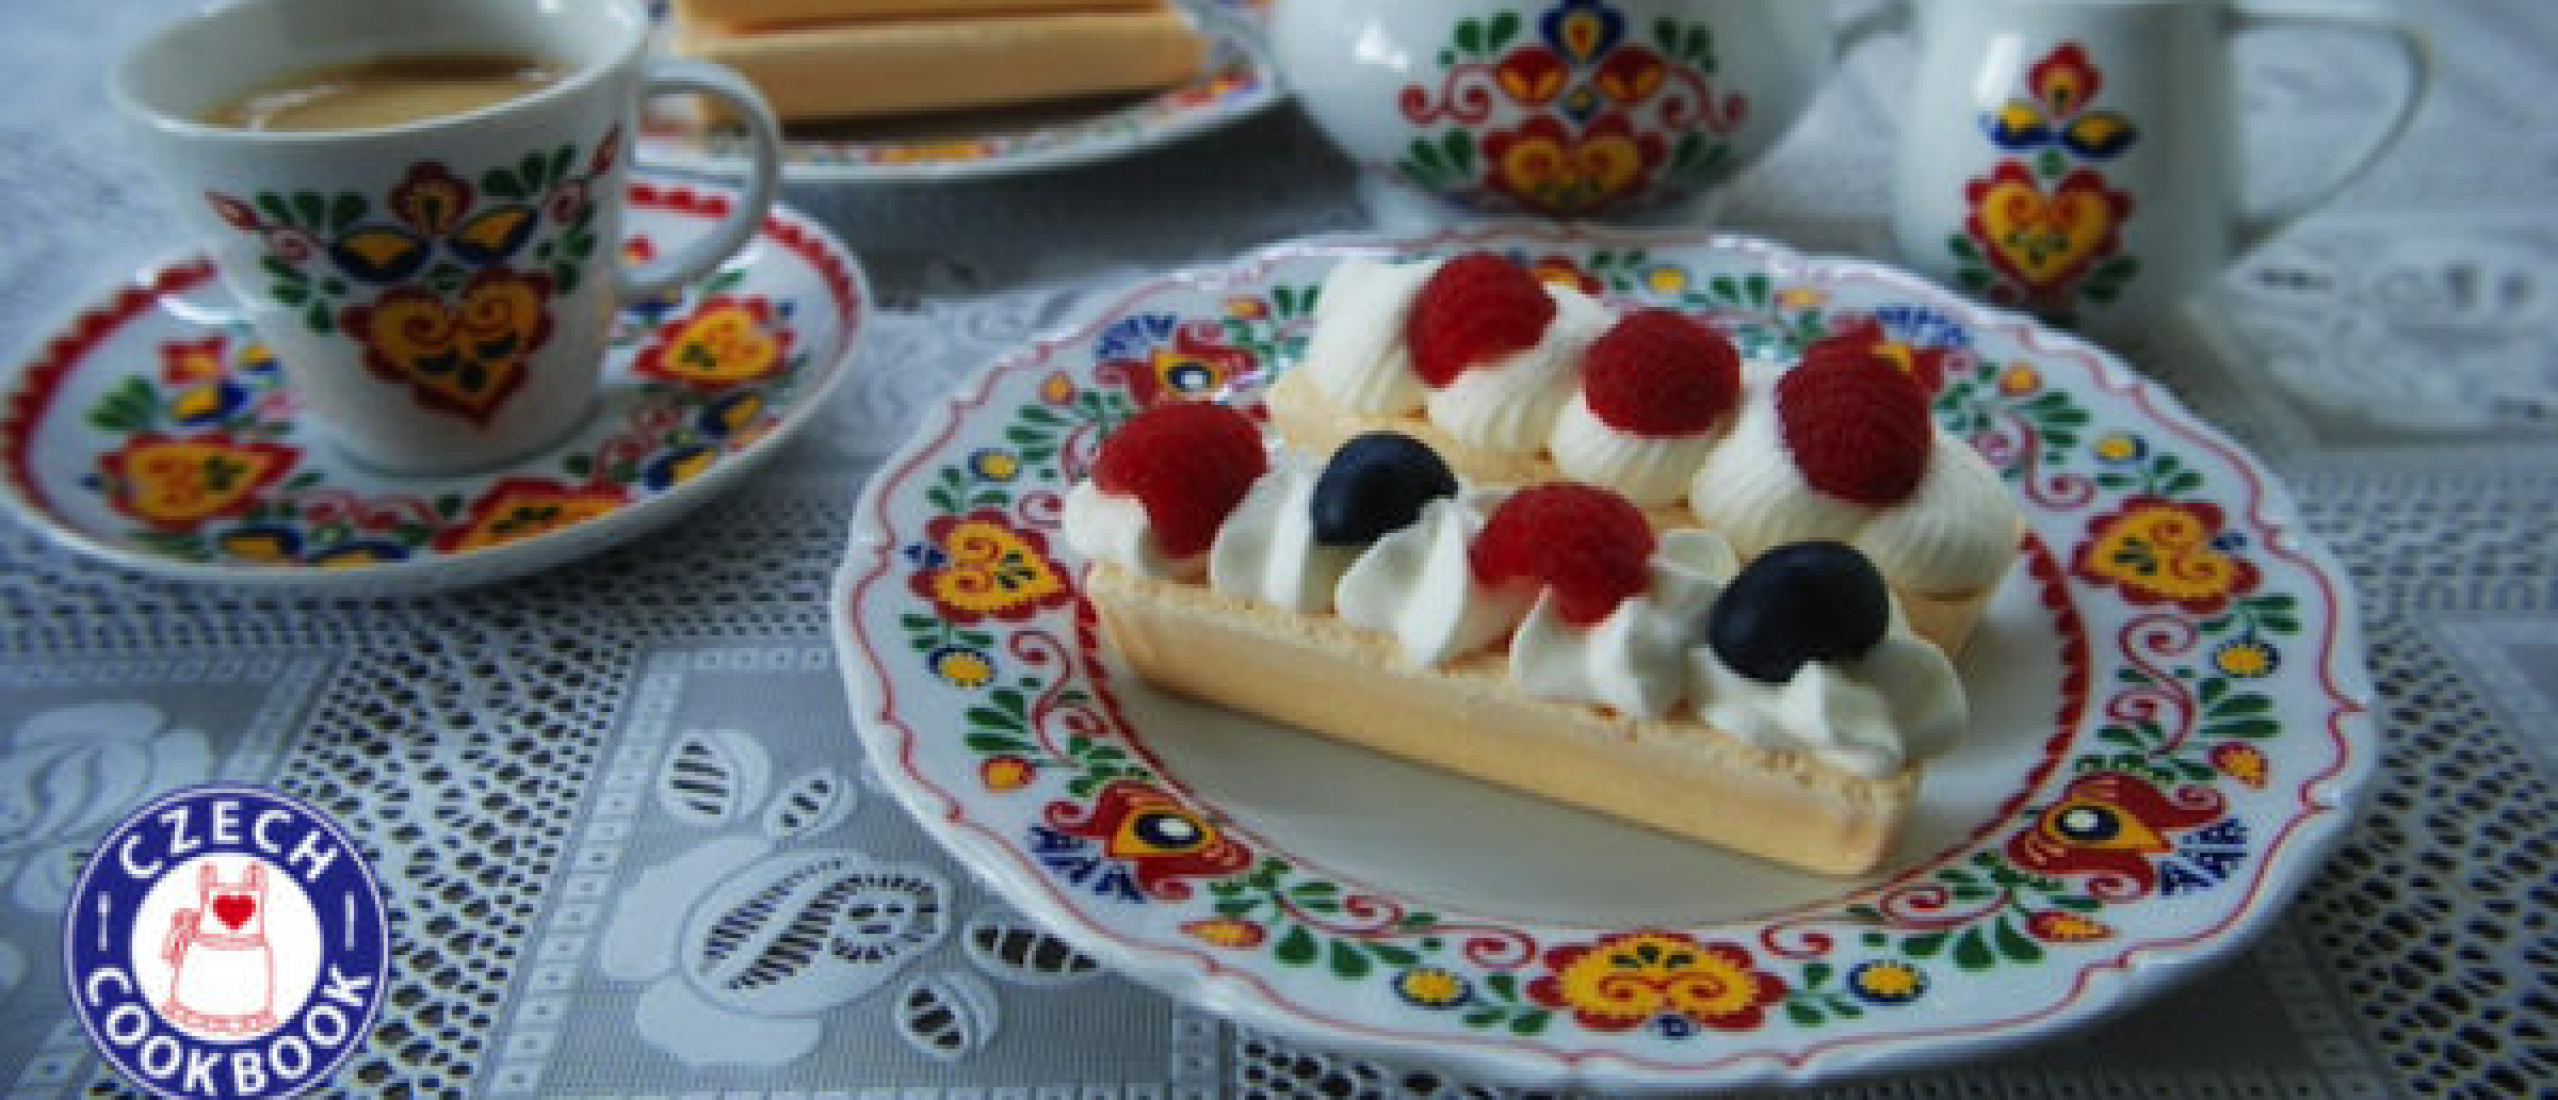 Rakvičky recept onthuld: het geheim achter dit heerlijke dessert